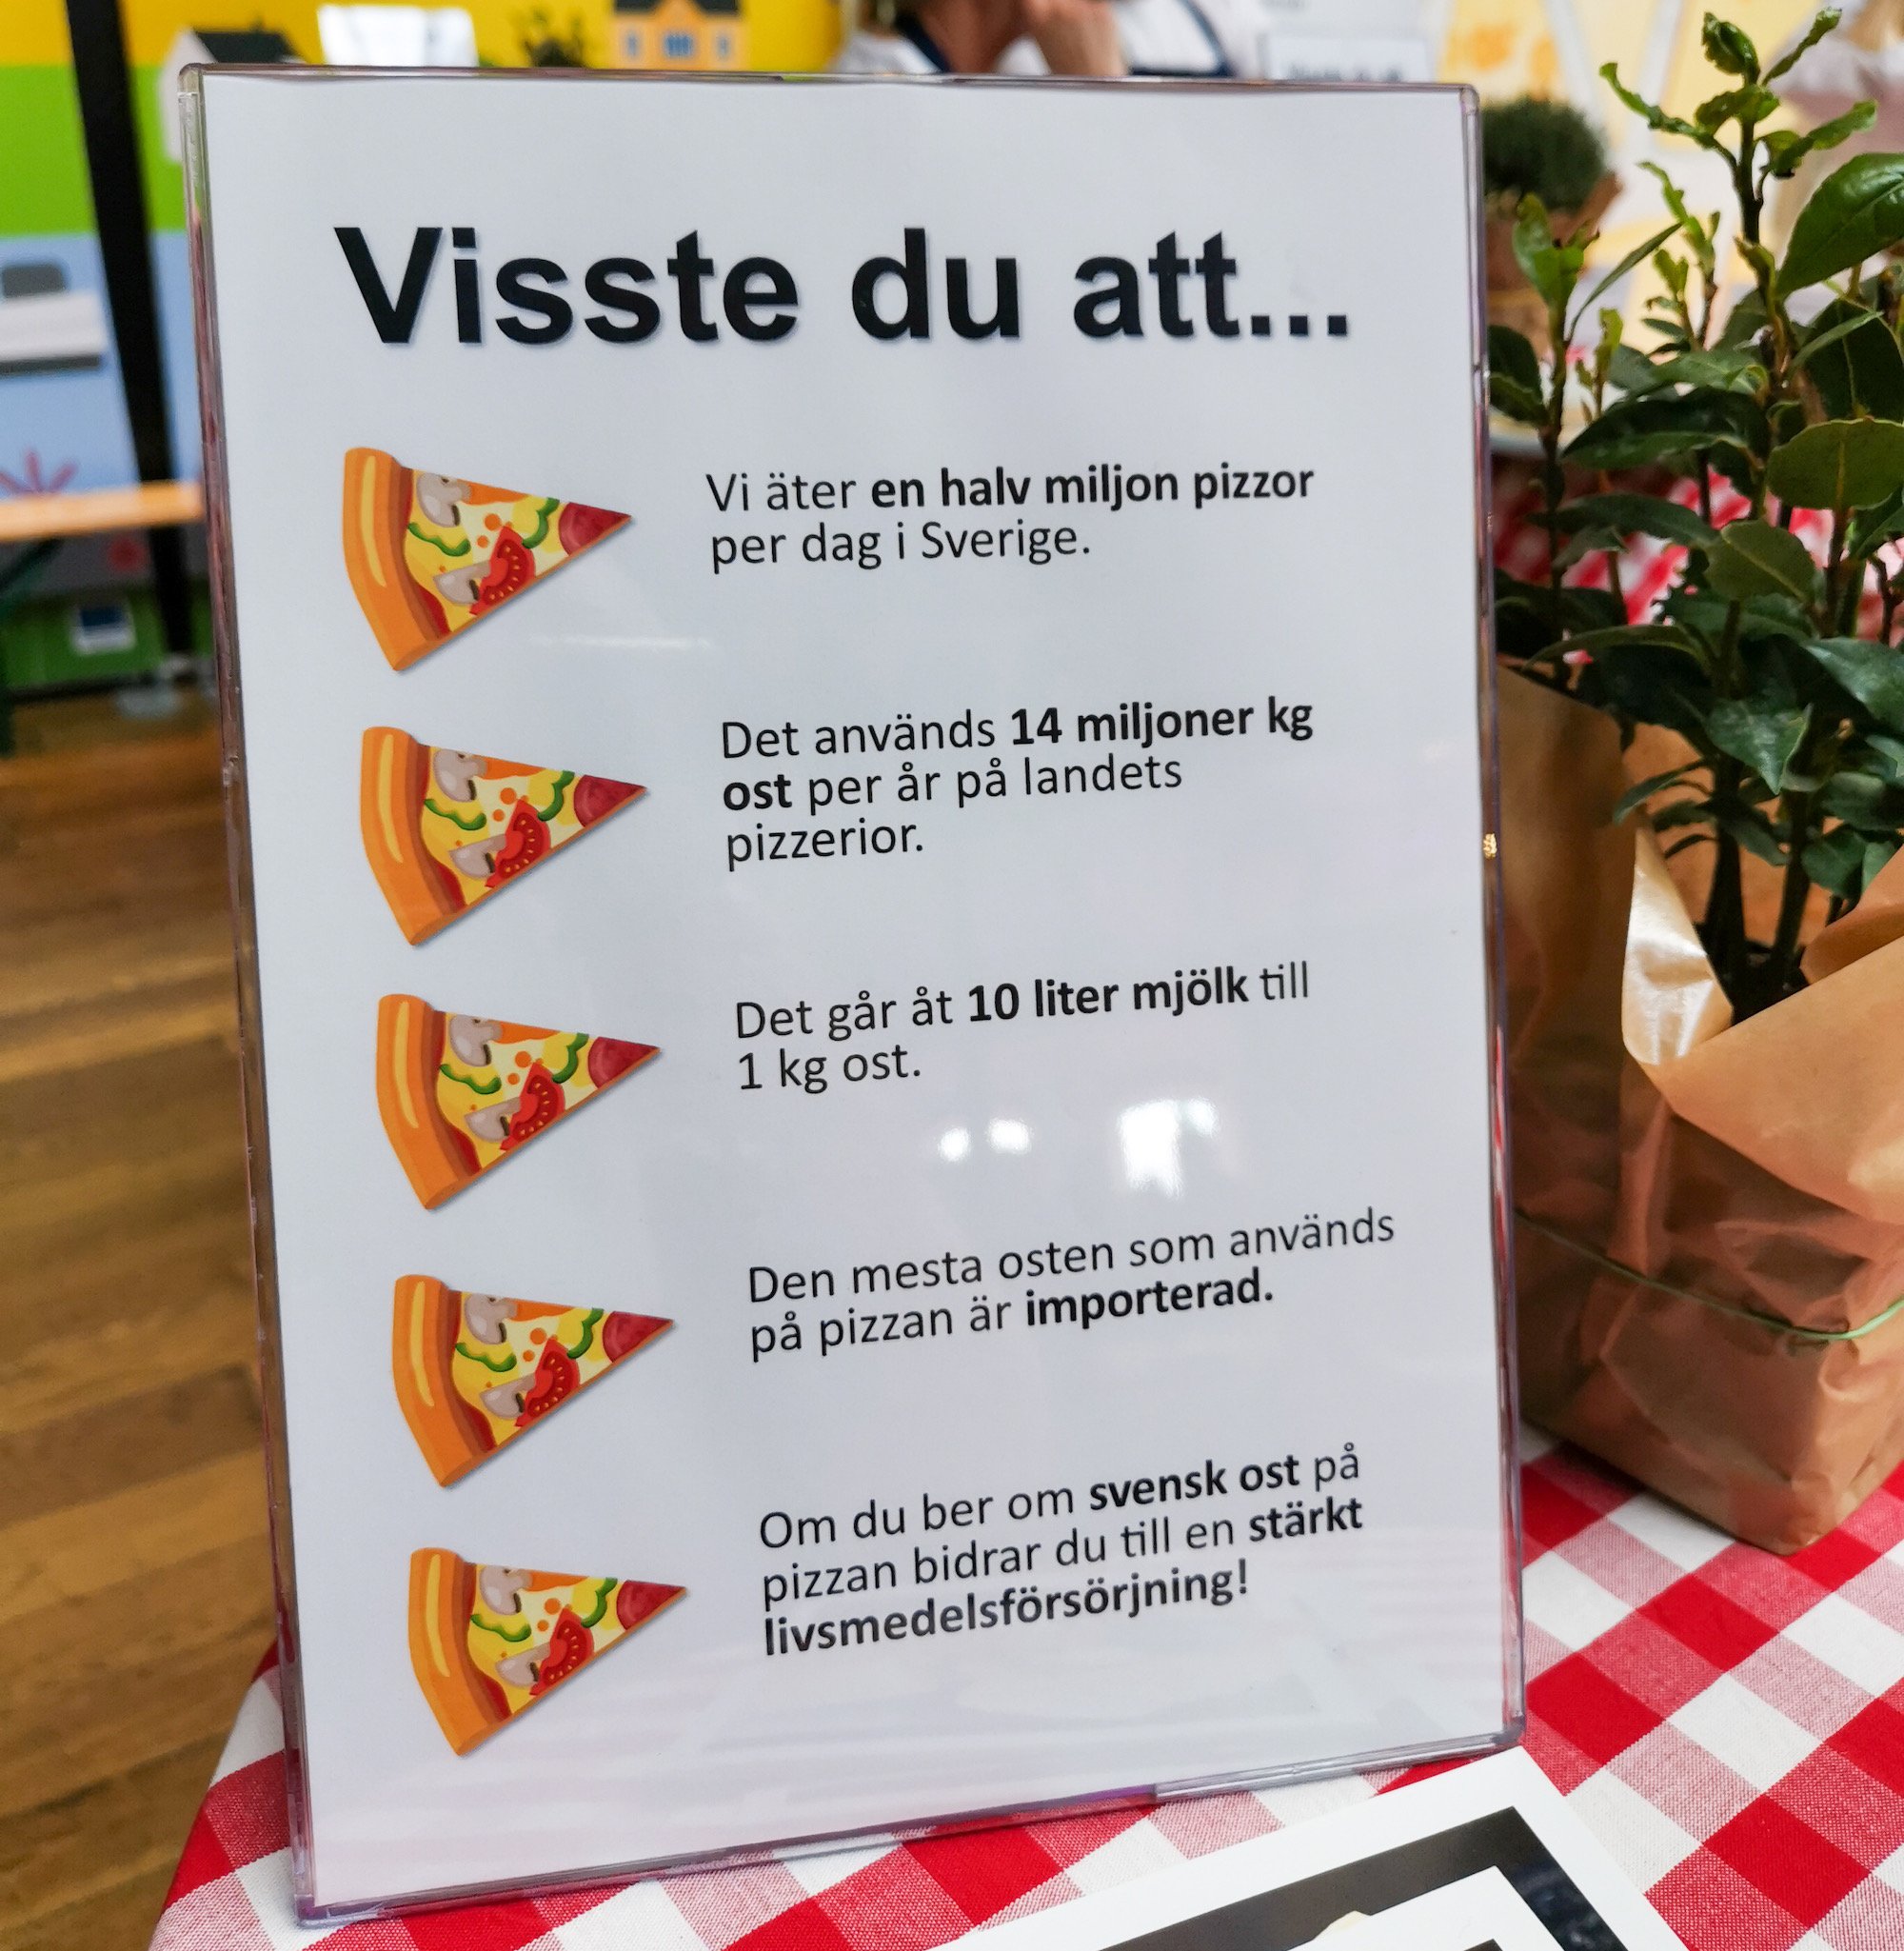 Datos de la pizza sueca